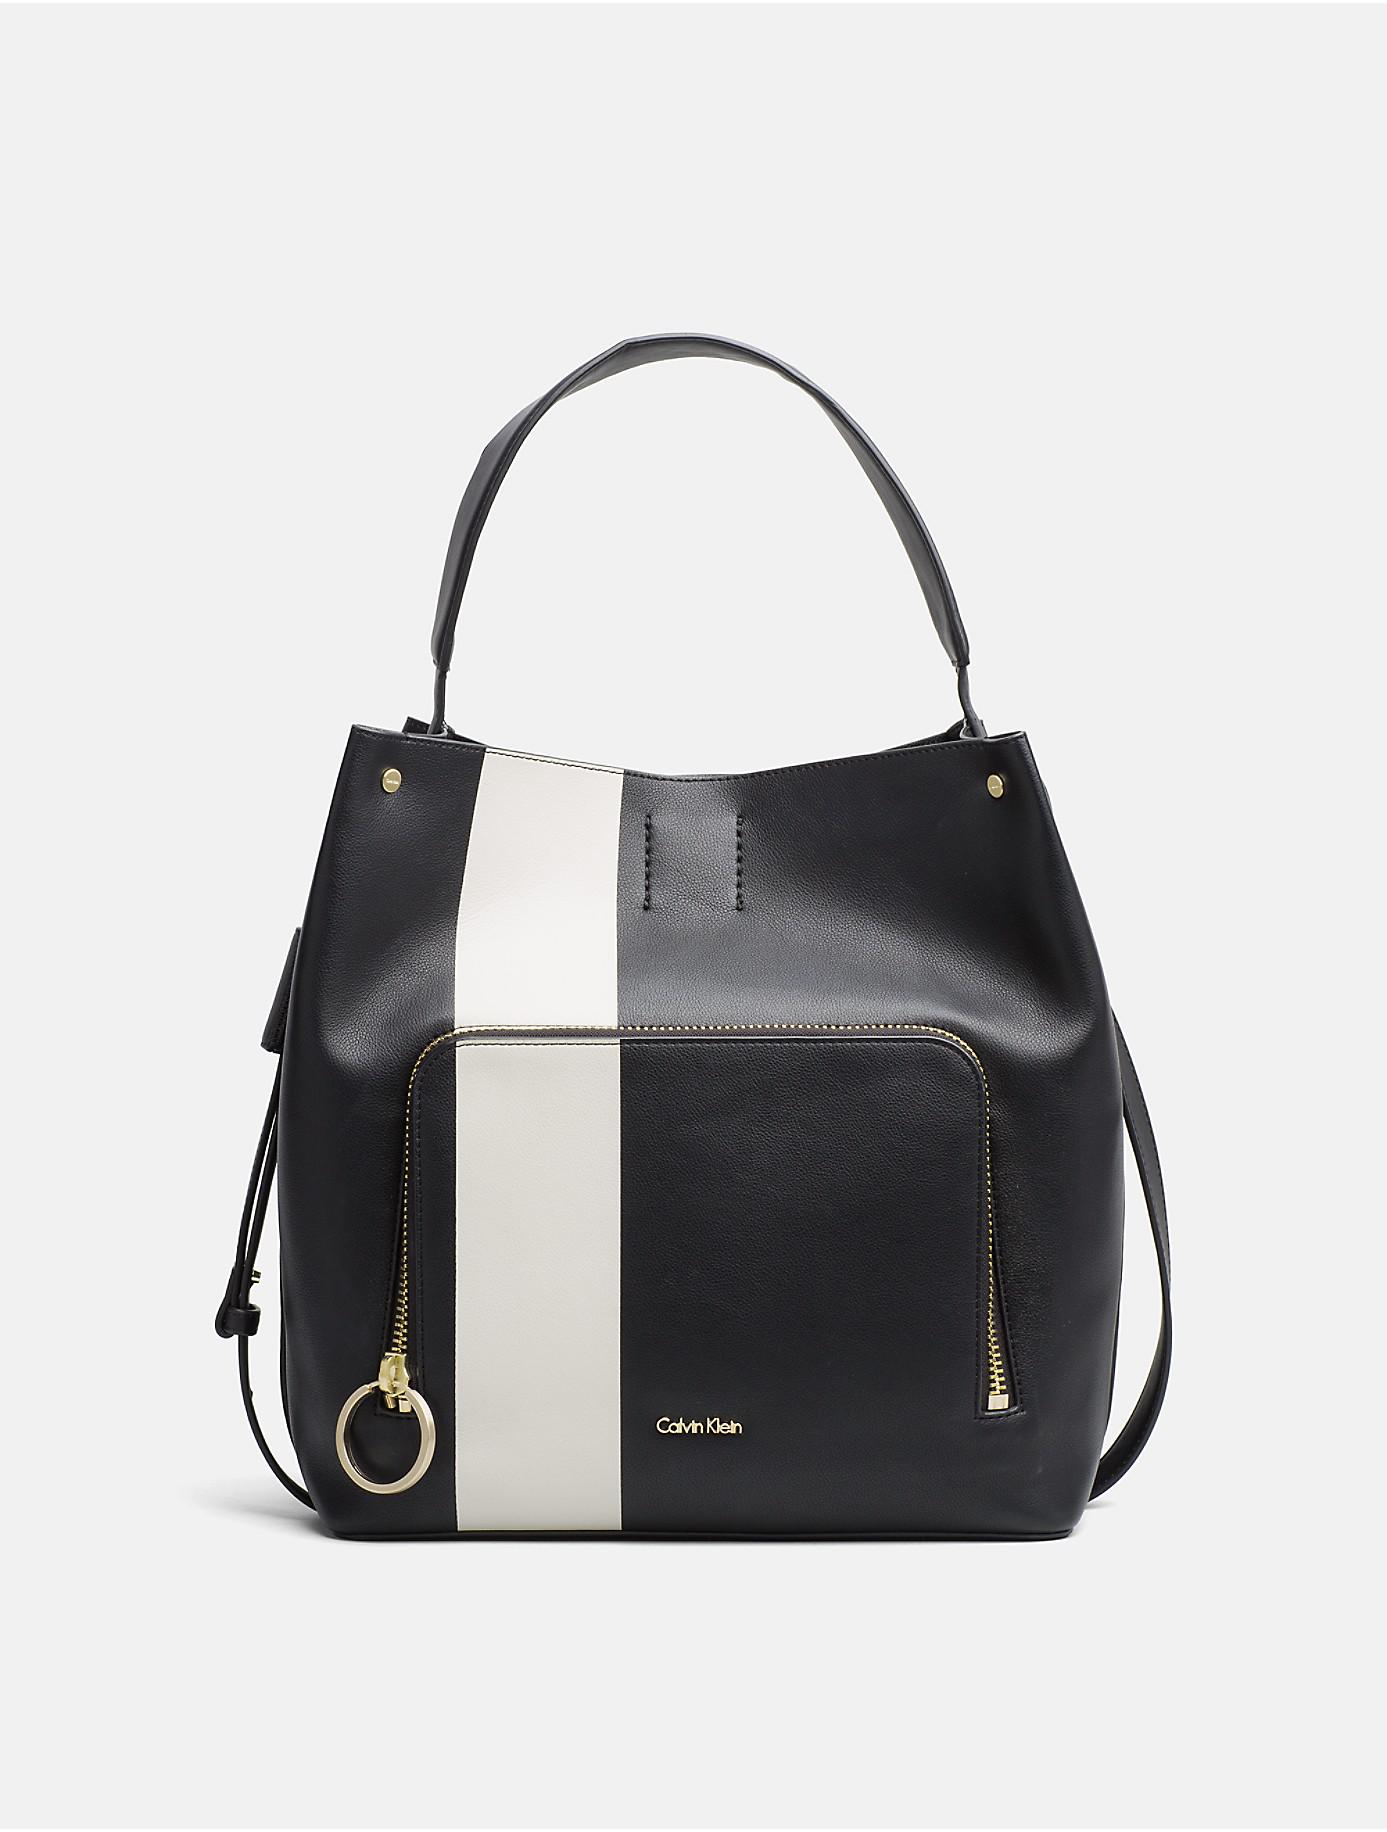 Lyst - Calvin Klein Large Stripe Hobo Bag in Black